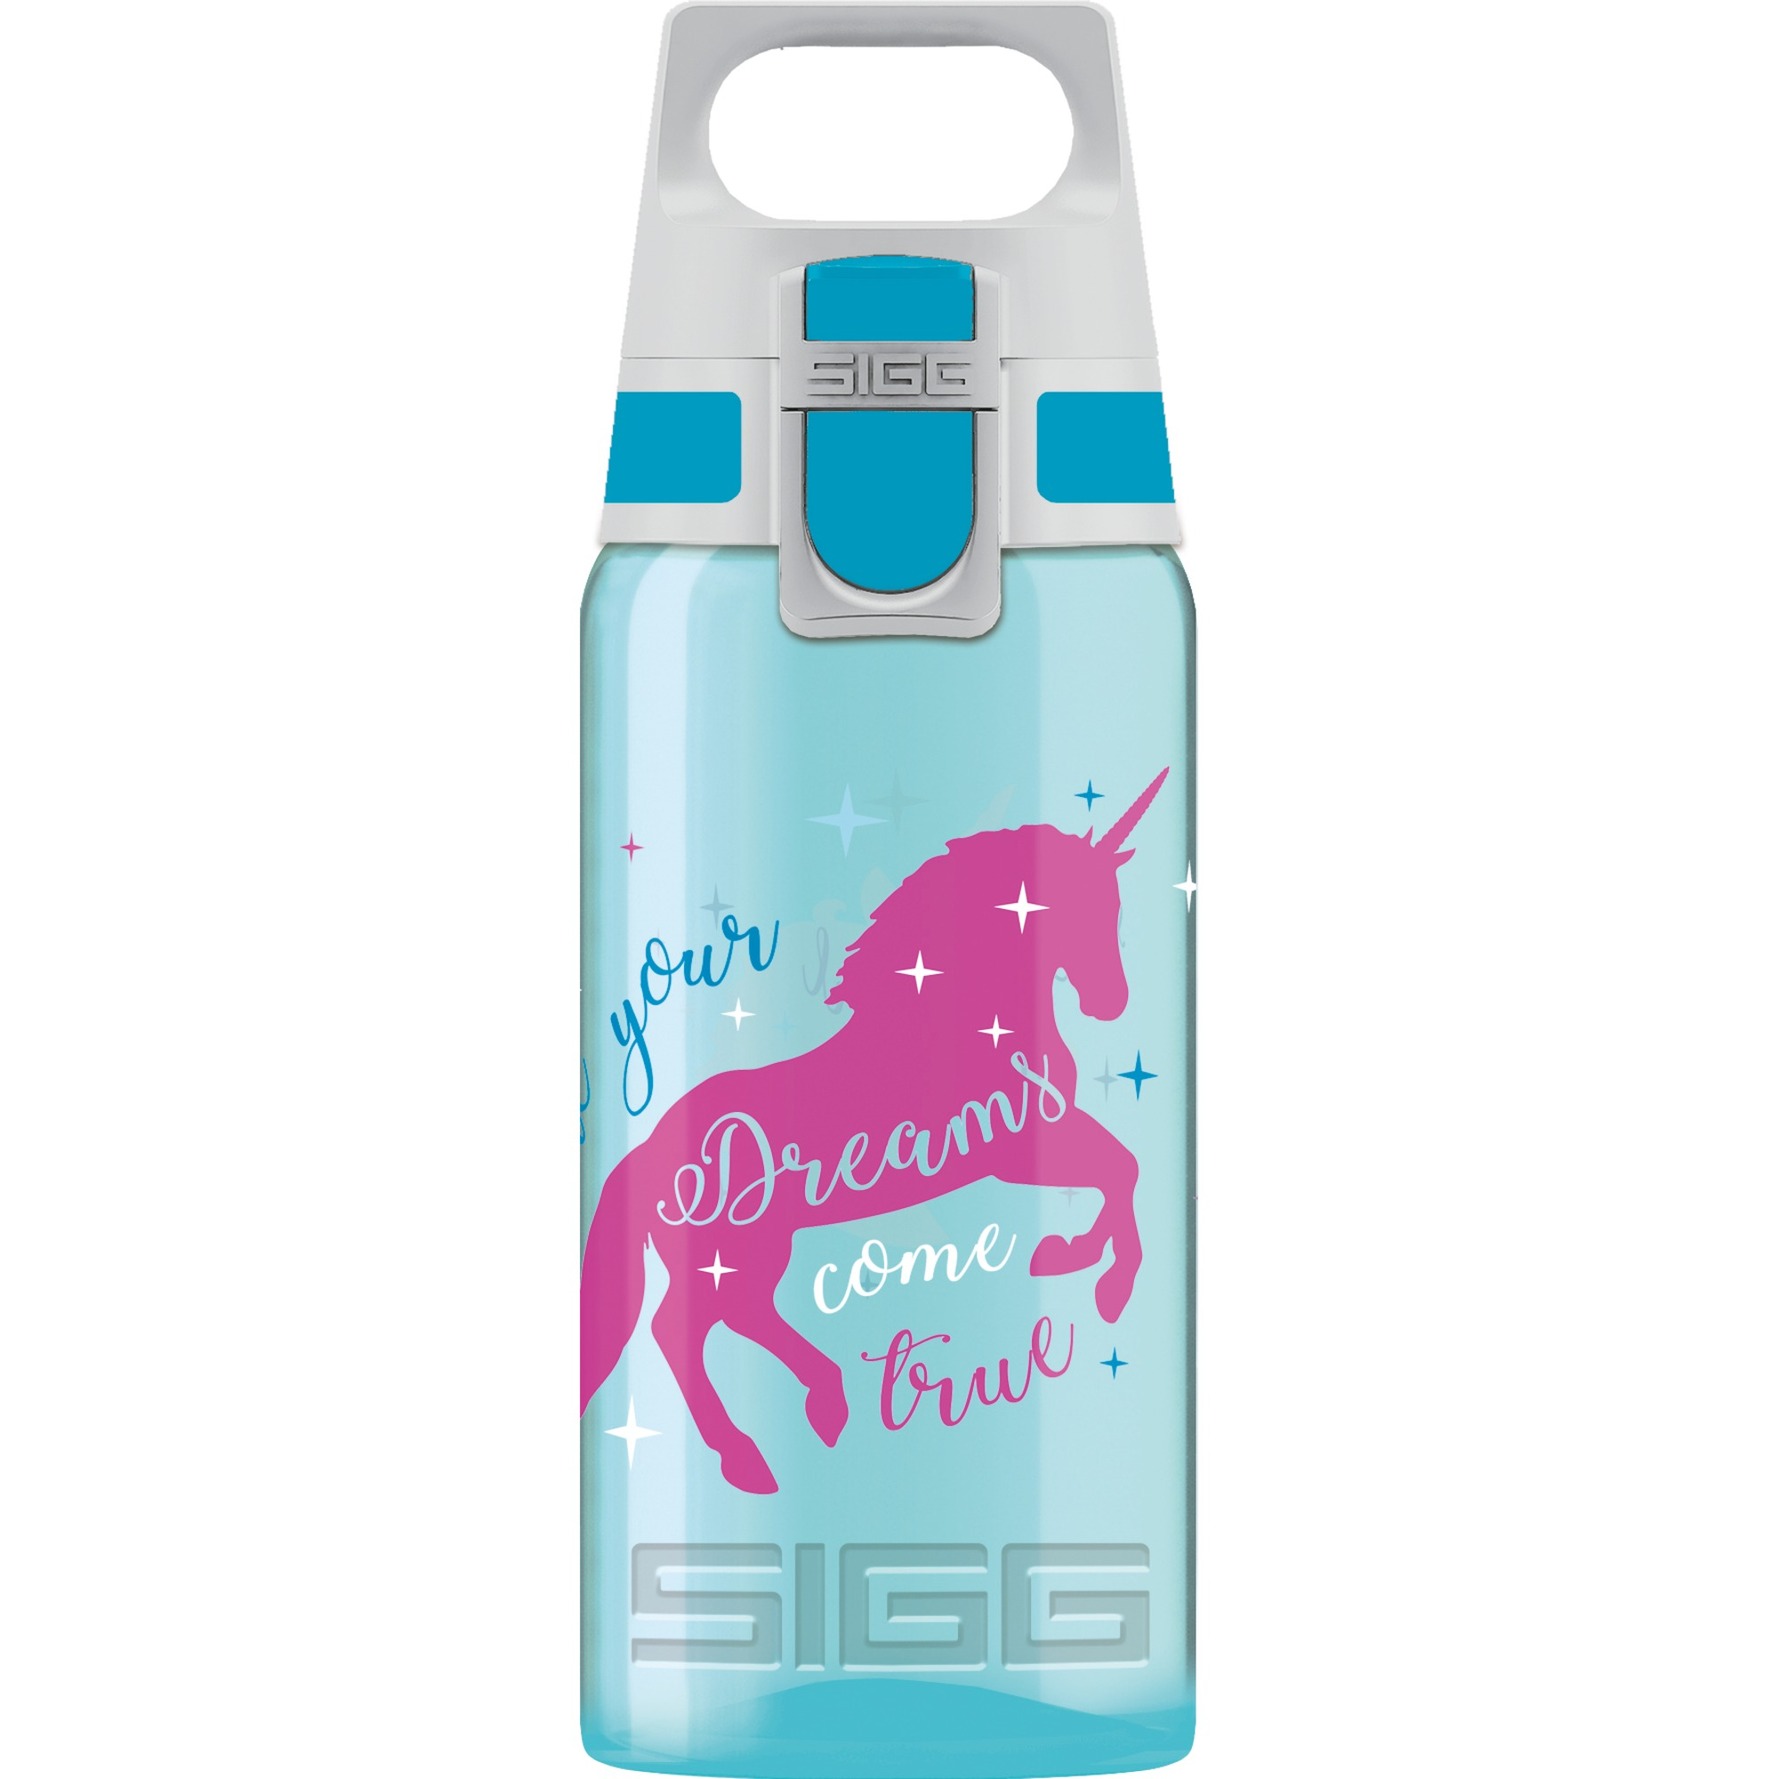 Image of Alternate - Trinkflasche VIVA ONE Unicorn 0,5L online einkaufen bei Alternate